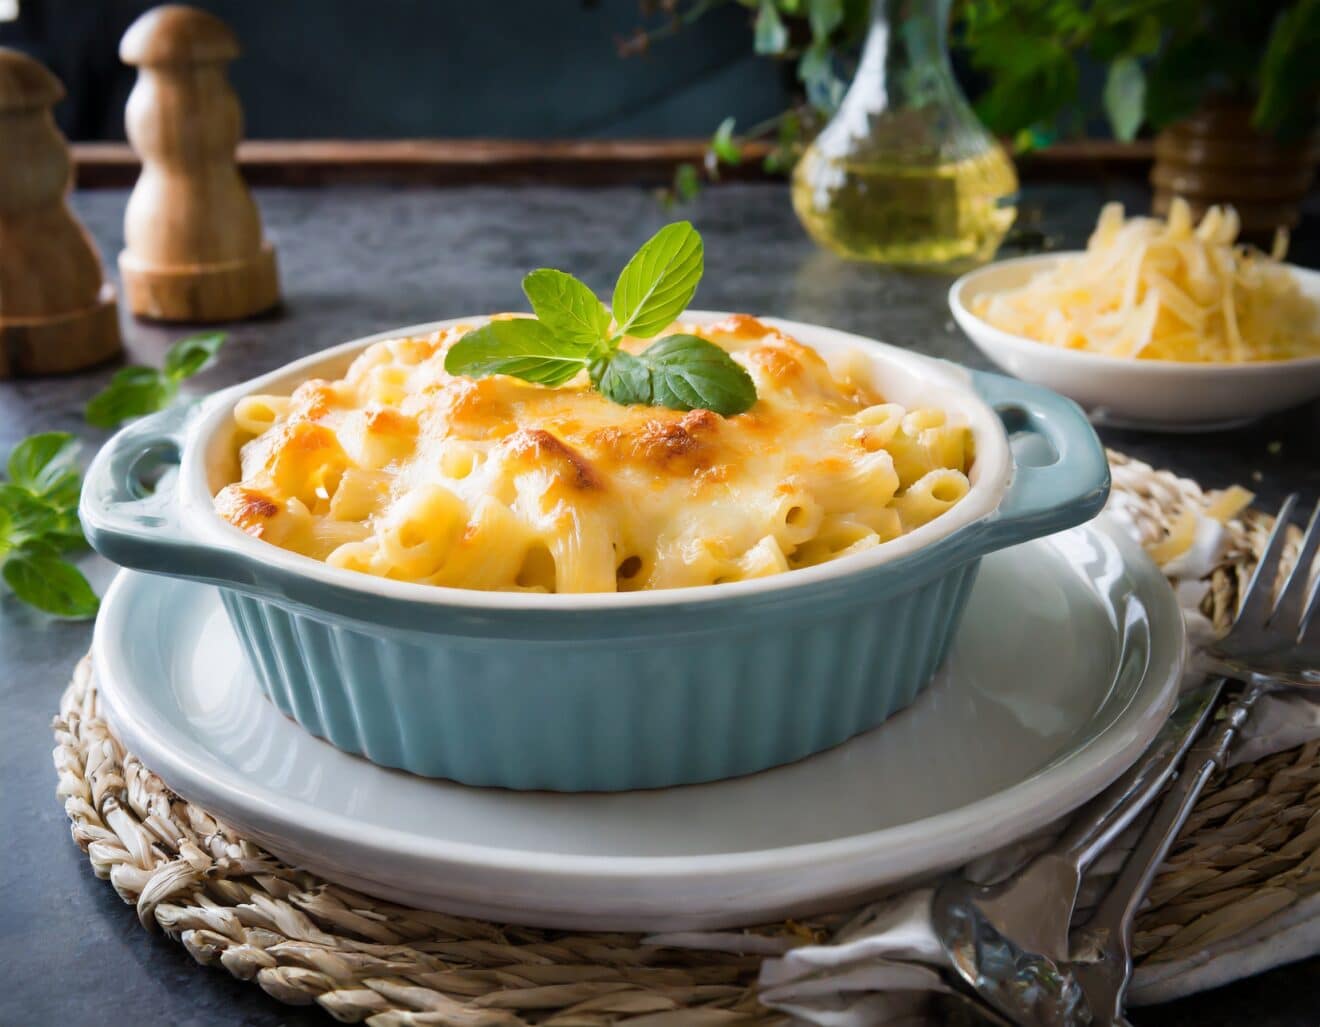 Découvrez le Gratin de macaronis au fromage à la française !